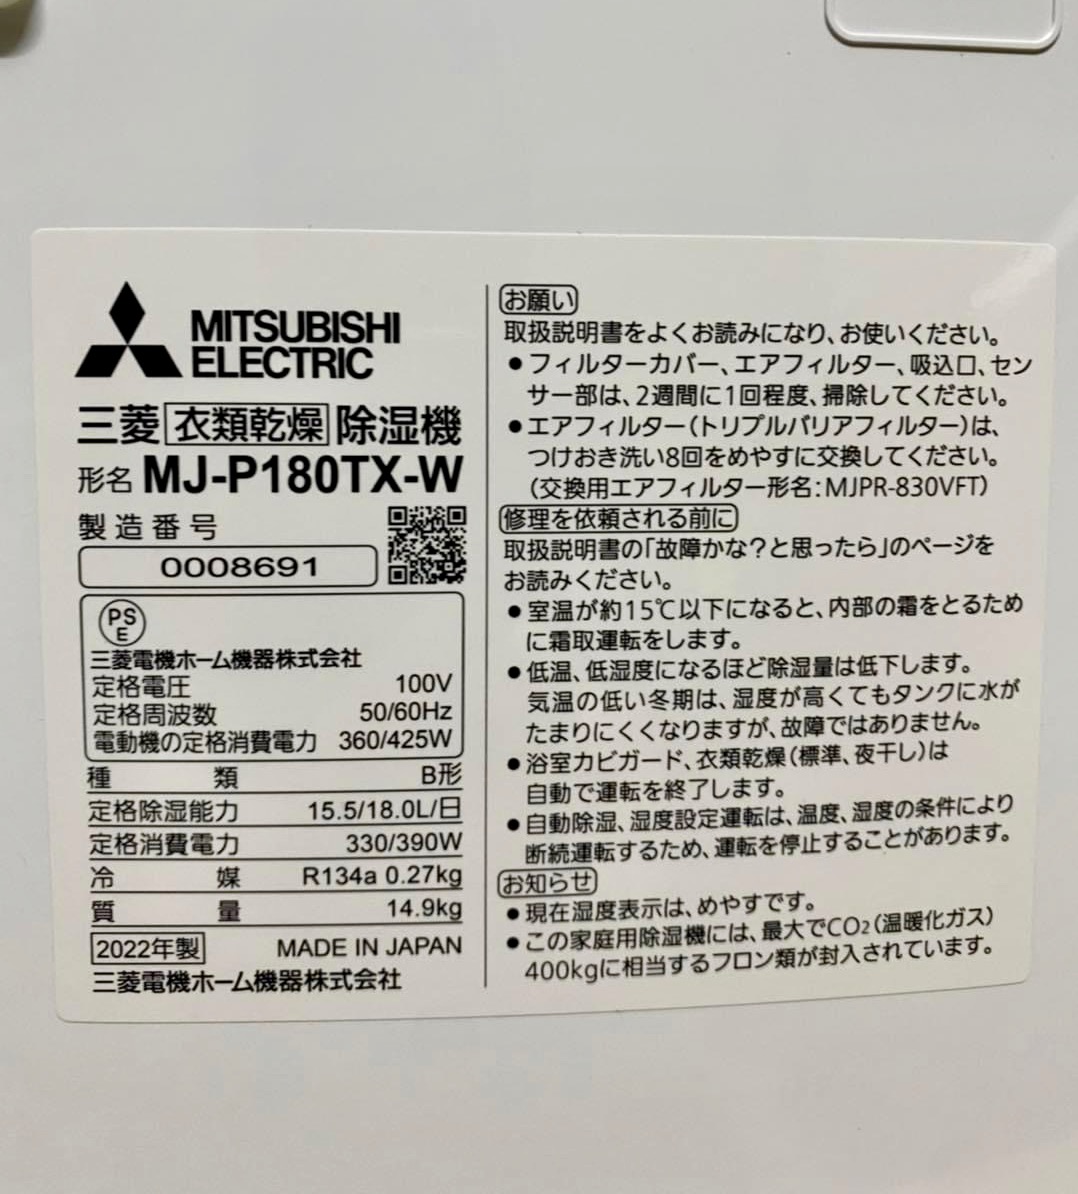 MÁY HÚT ẨM NHẬT NỘI ĐỊA MITSUBISHI MJ-P180TX-W (2023) - MADE IN JAPAN